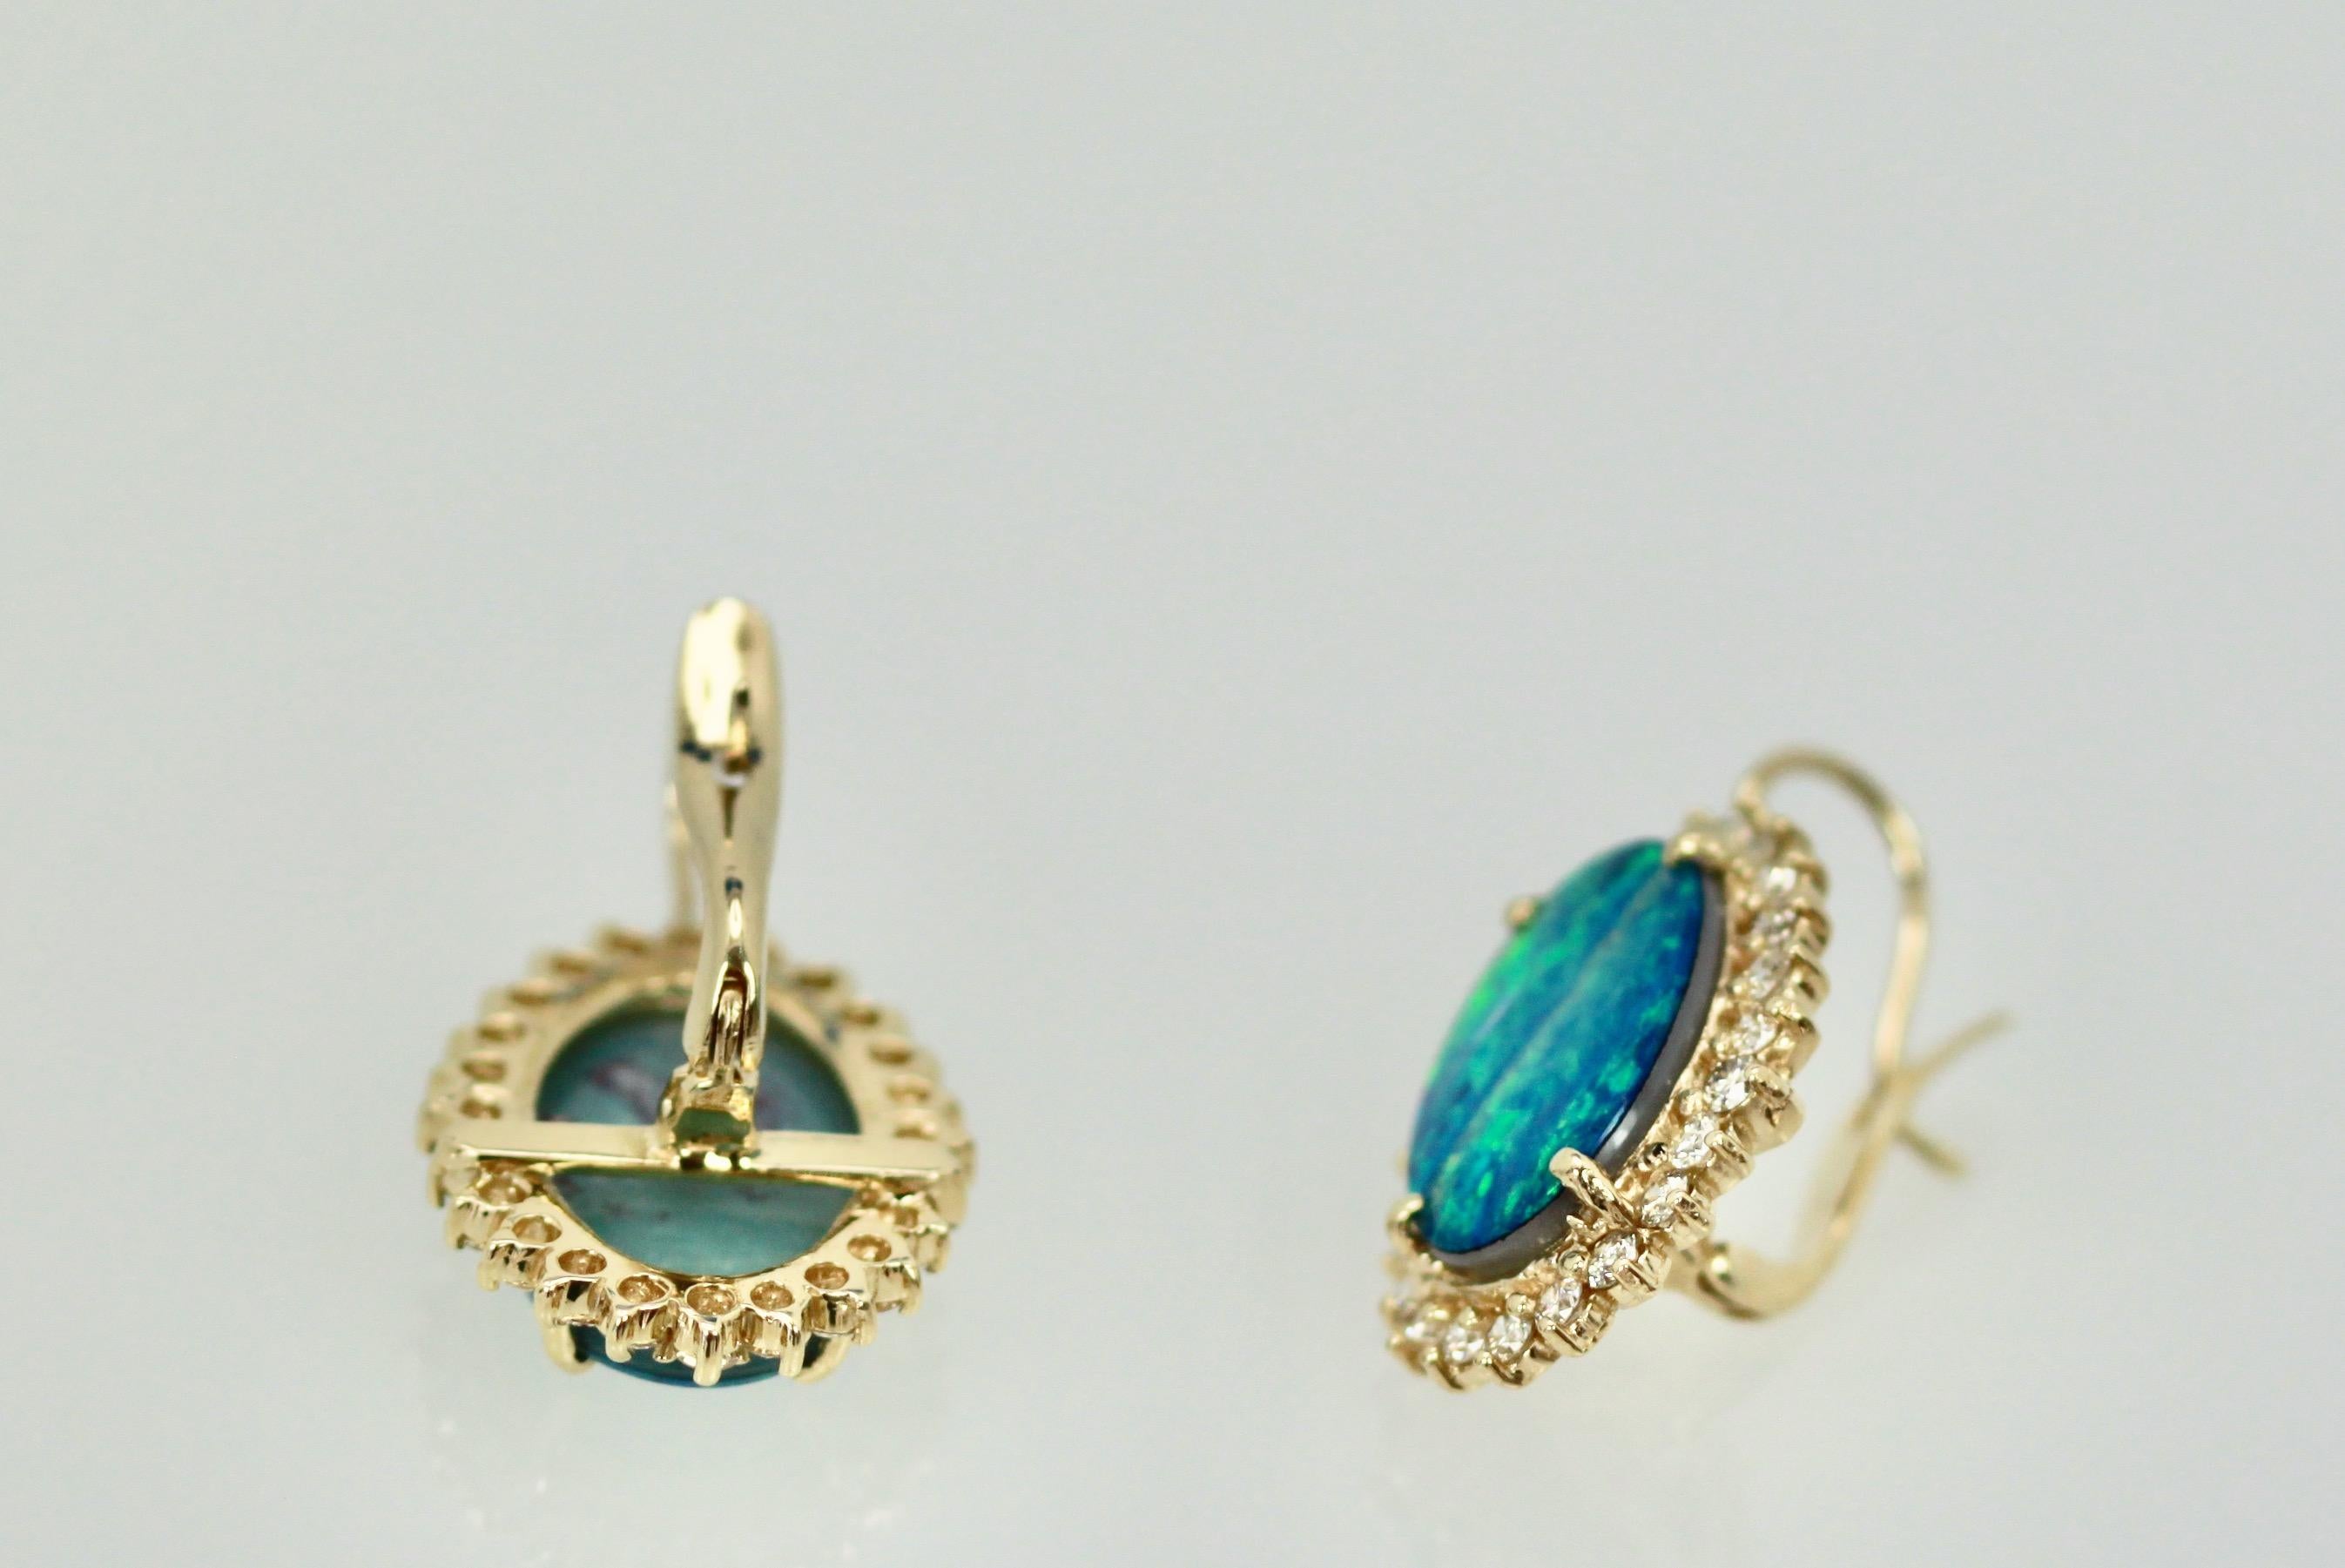 Oval Cut Black Opal Diamond Earrings 14 Karat Yellow Gold For Sale